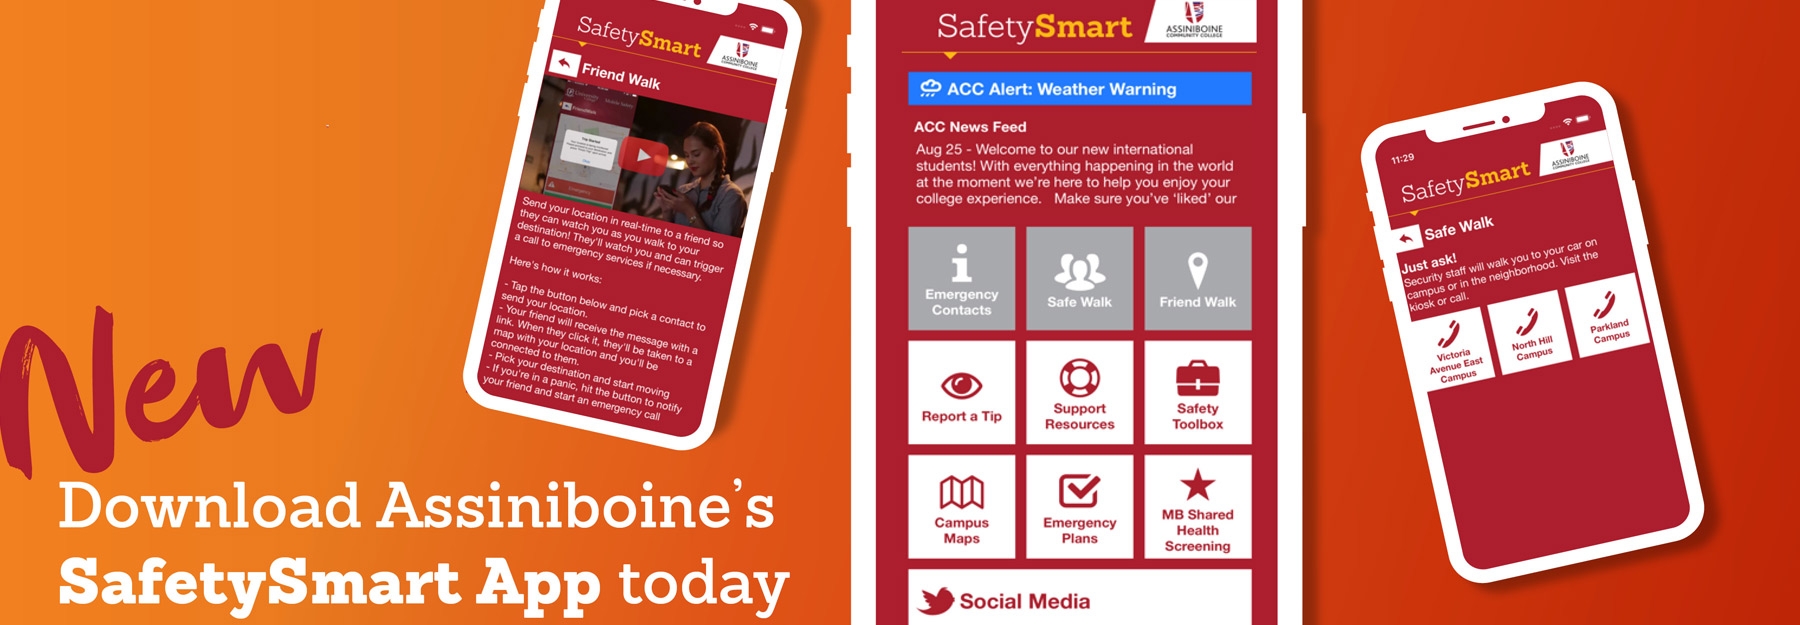 SafetySmart App 